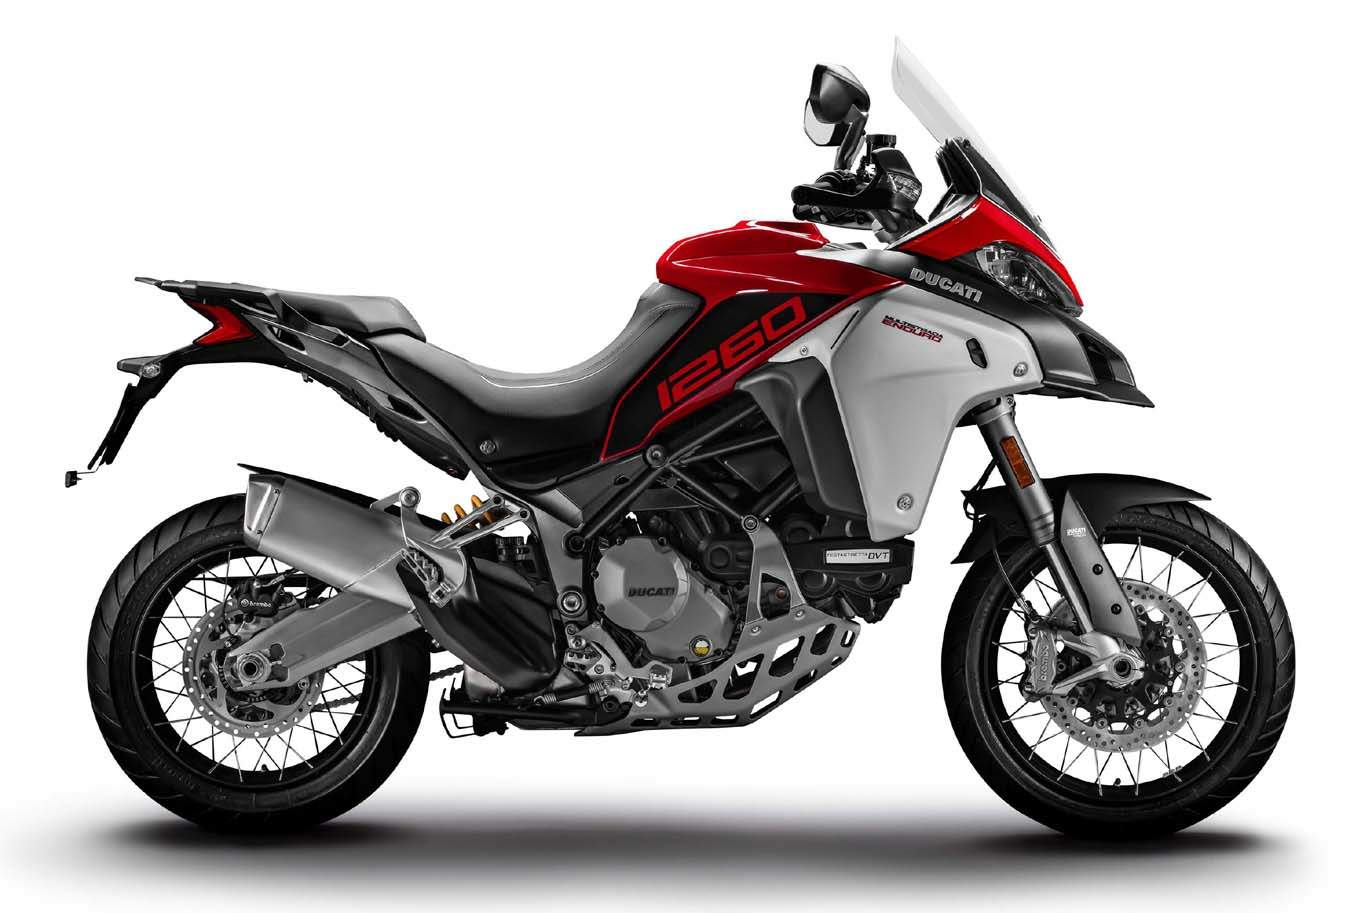 Ducati Multistrada 1260 Enduro technical specifications